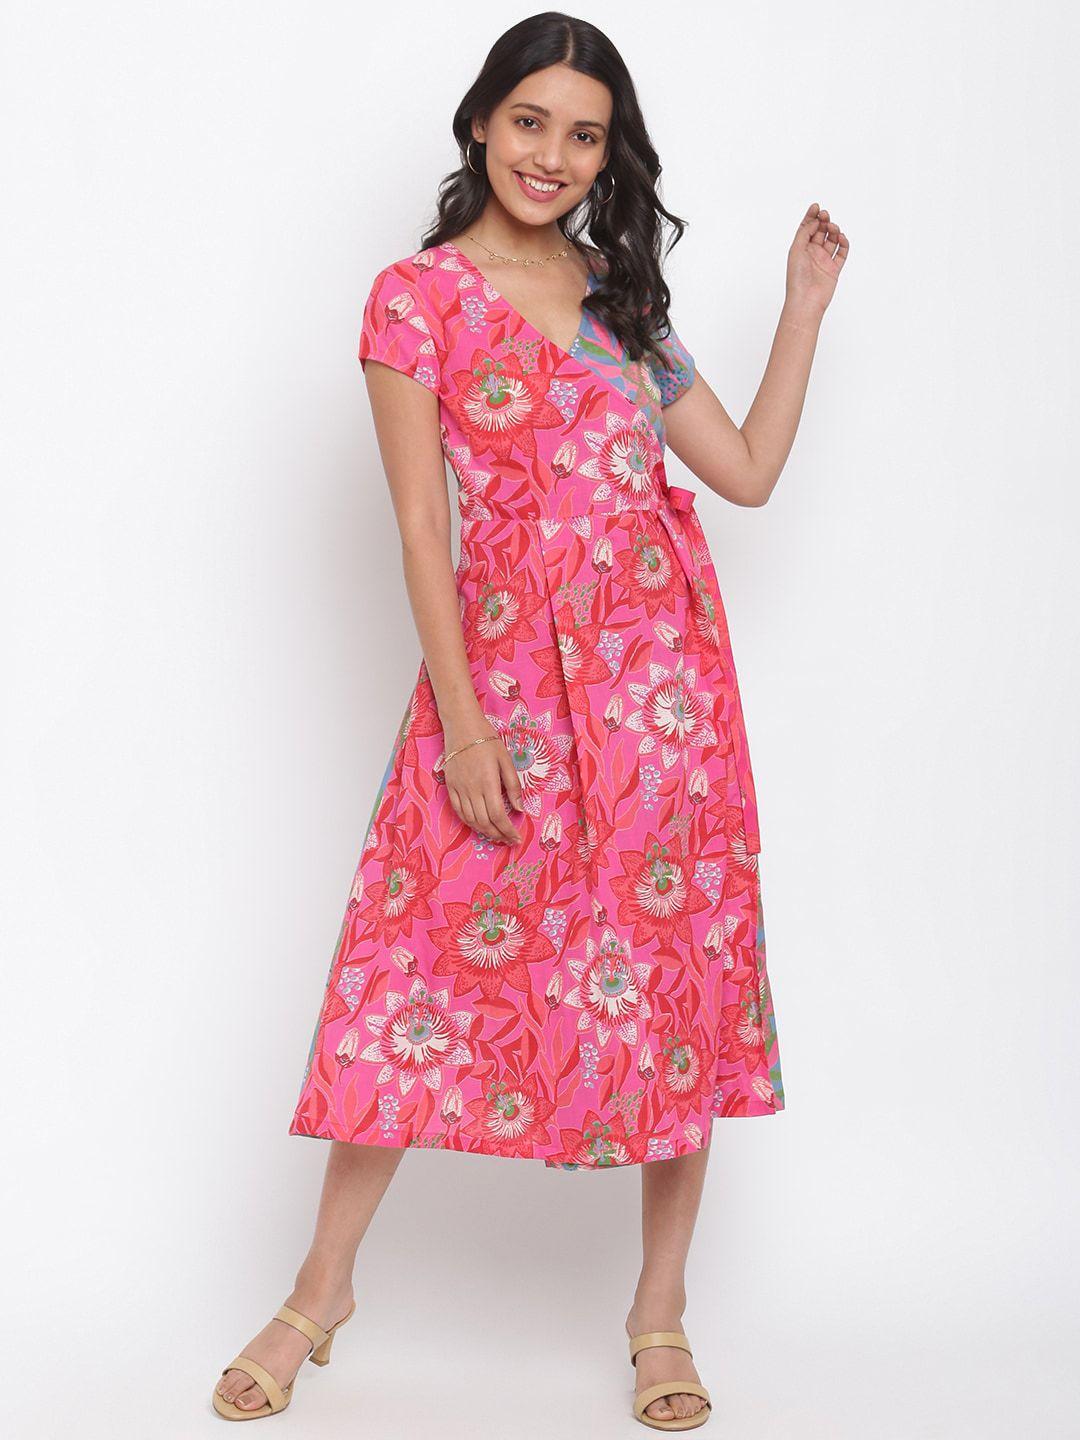 fabindia teal & pink printed floral midi dress